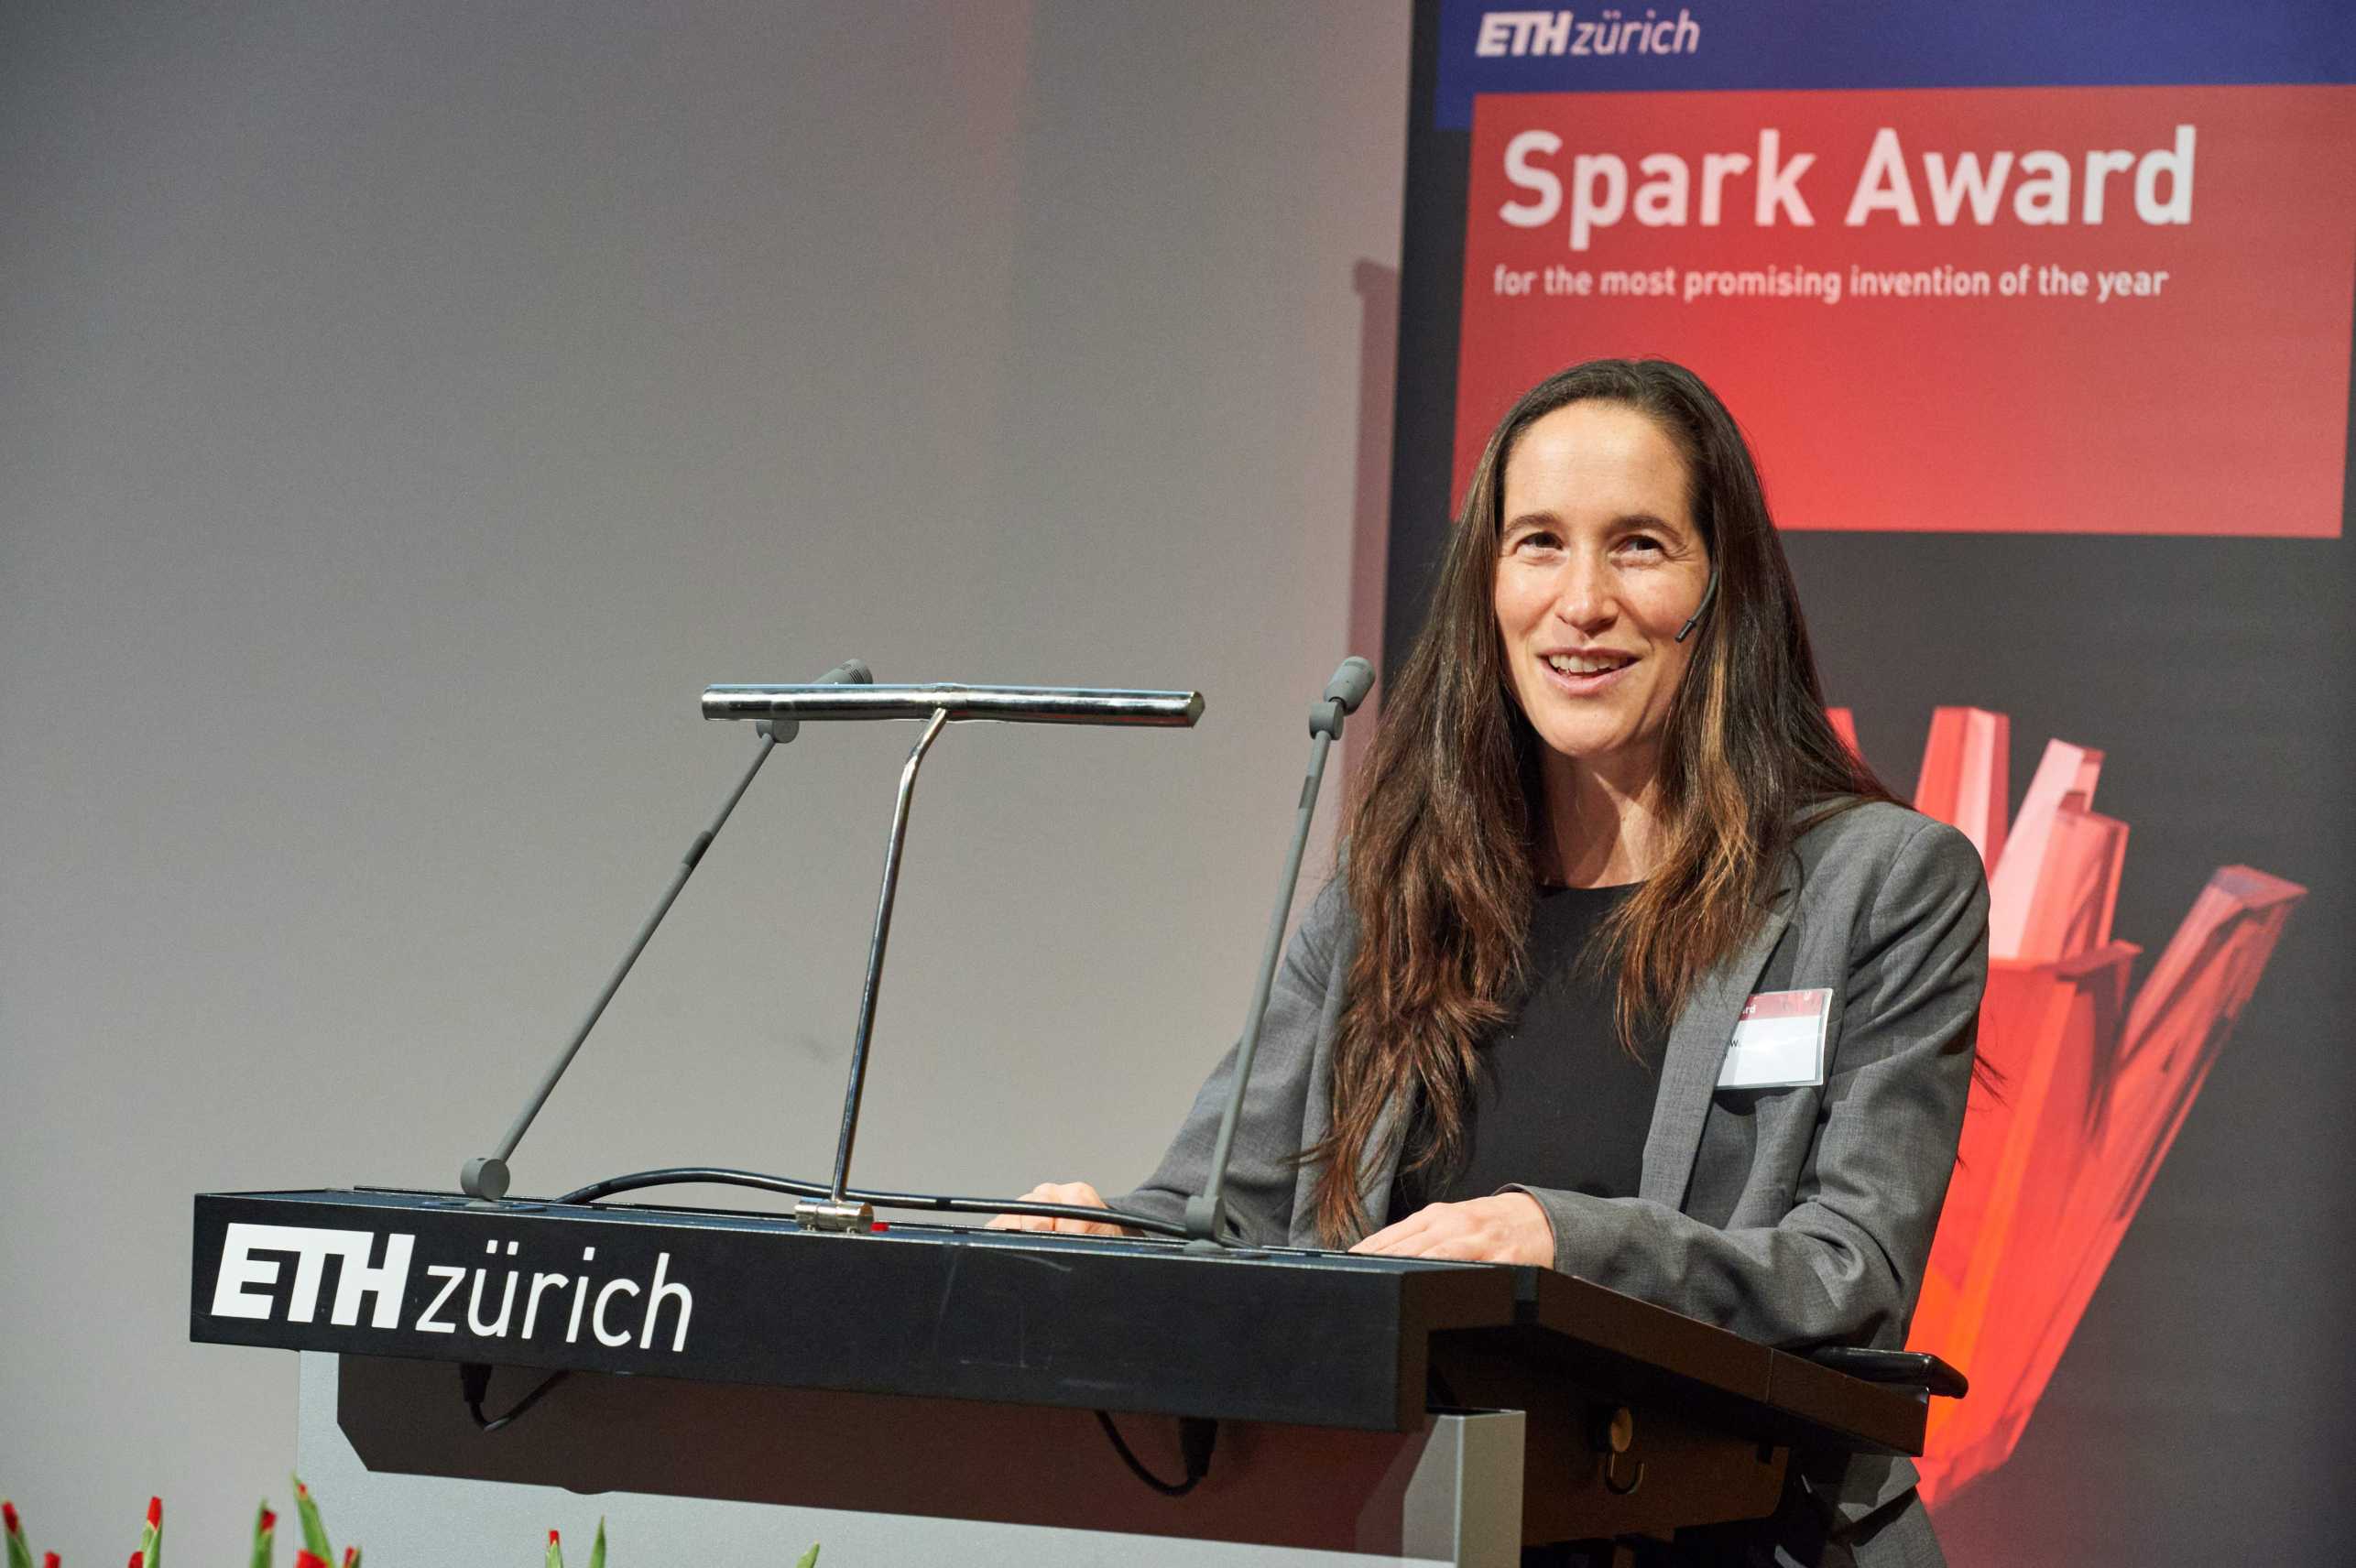 Vanessa Wood am Rednerpult der ETH Zürich bei der Verleihung des Spark Award.